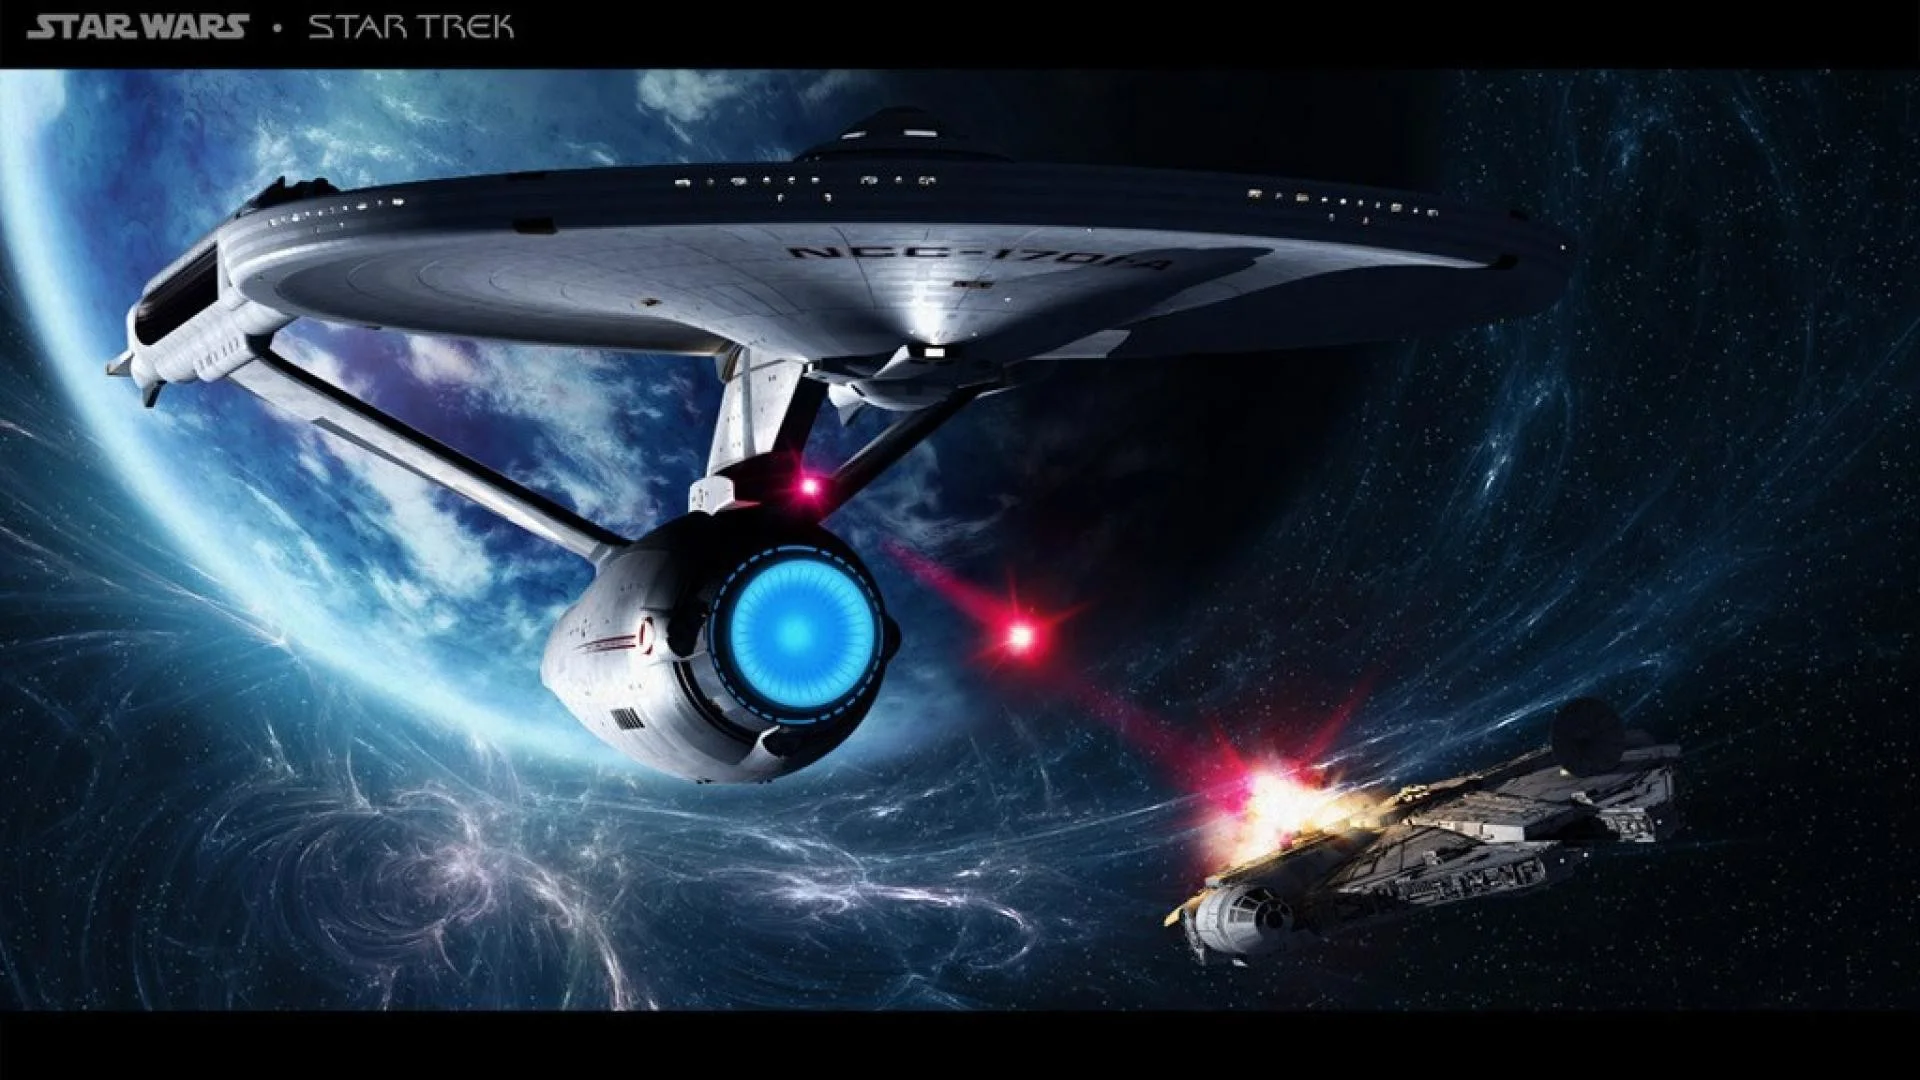 Star trek enterprise fights spaceship battle movie hd wallpaper .